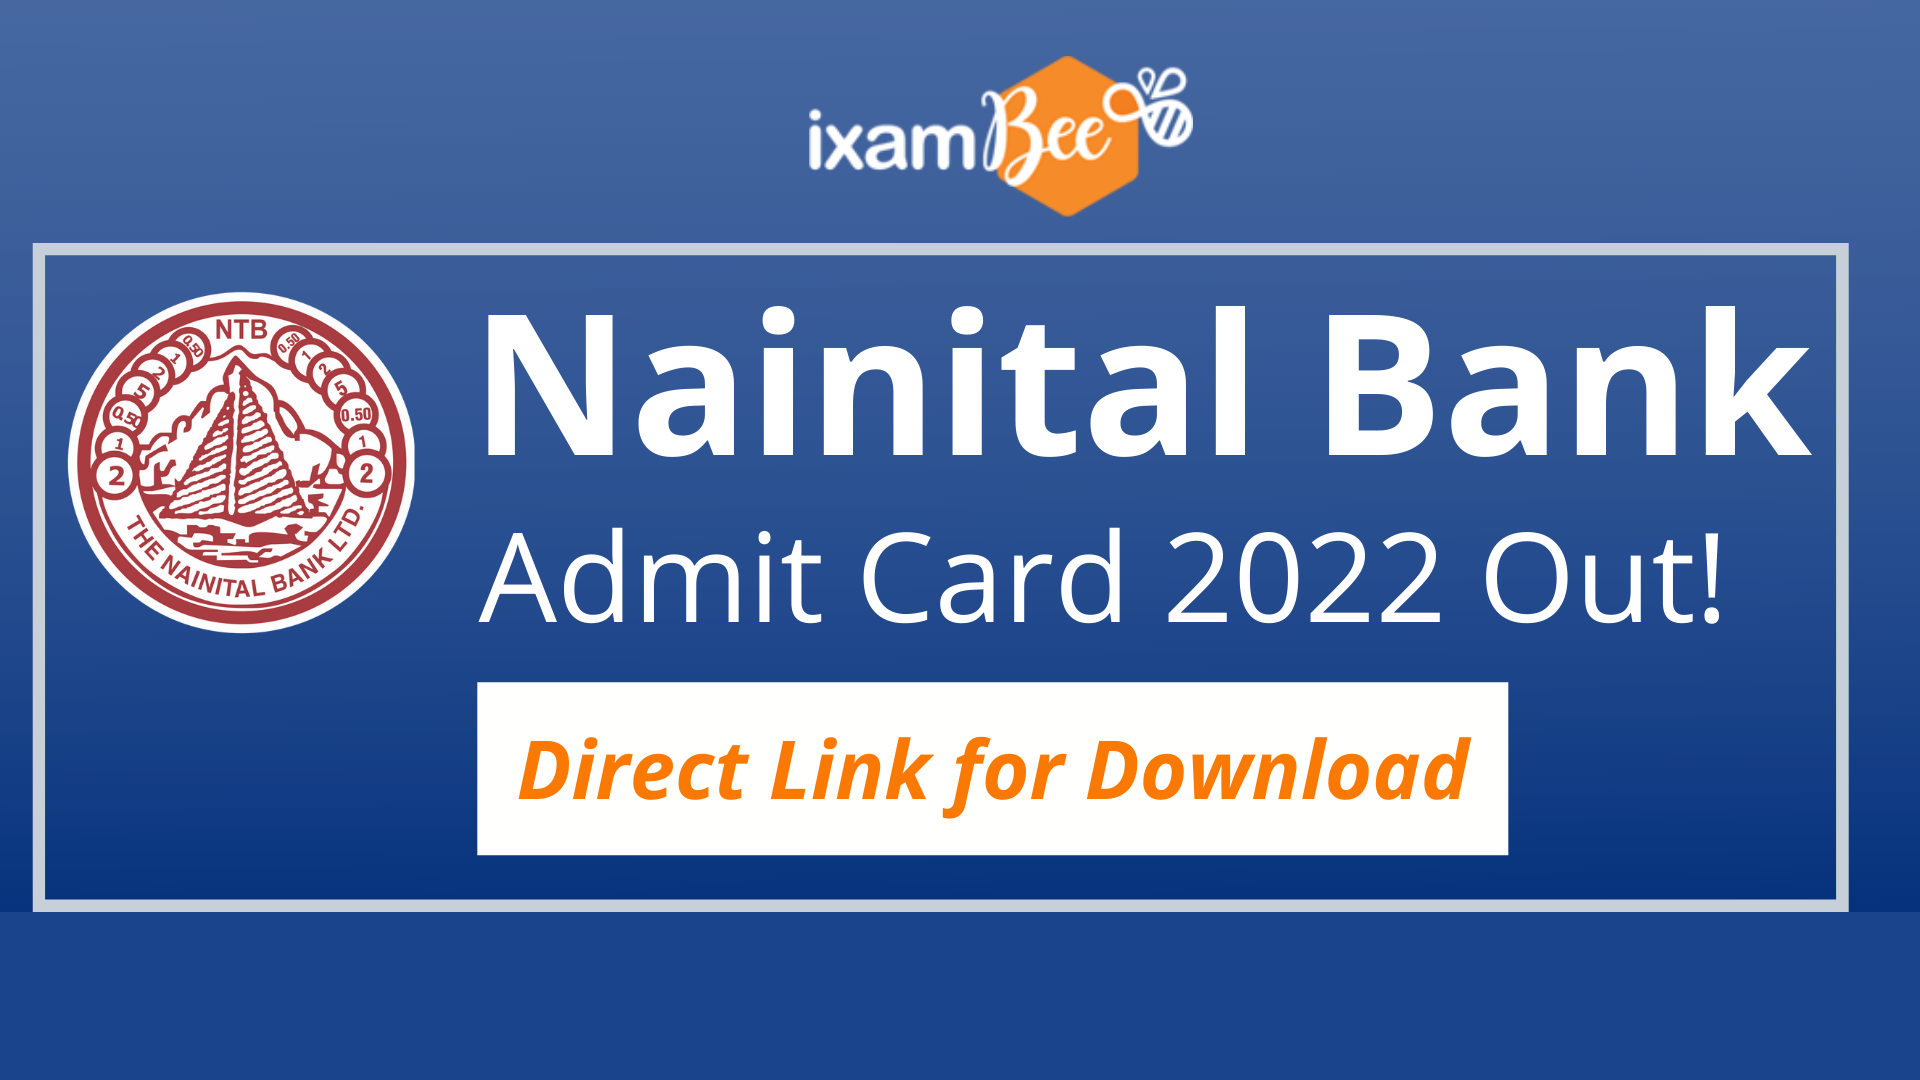 Nainital Bank Admit Card 2022 Out